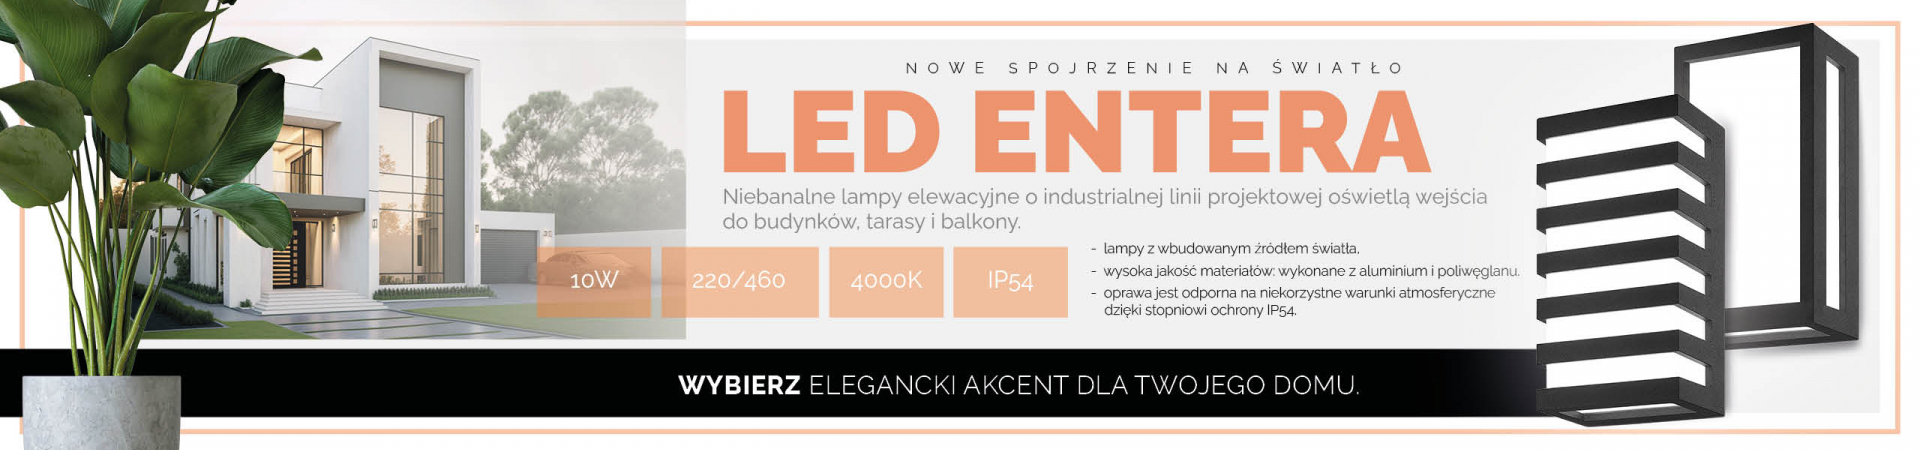 Led_Entera_pl